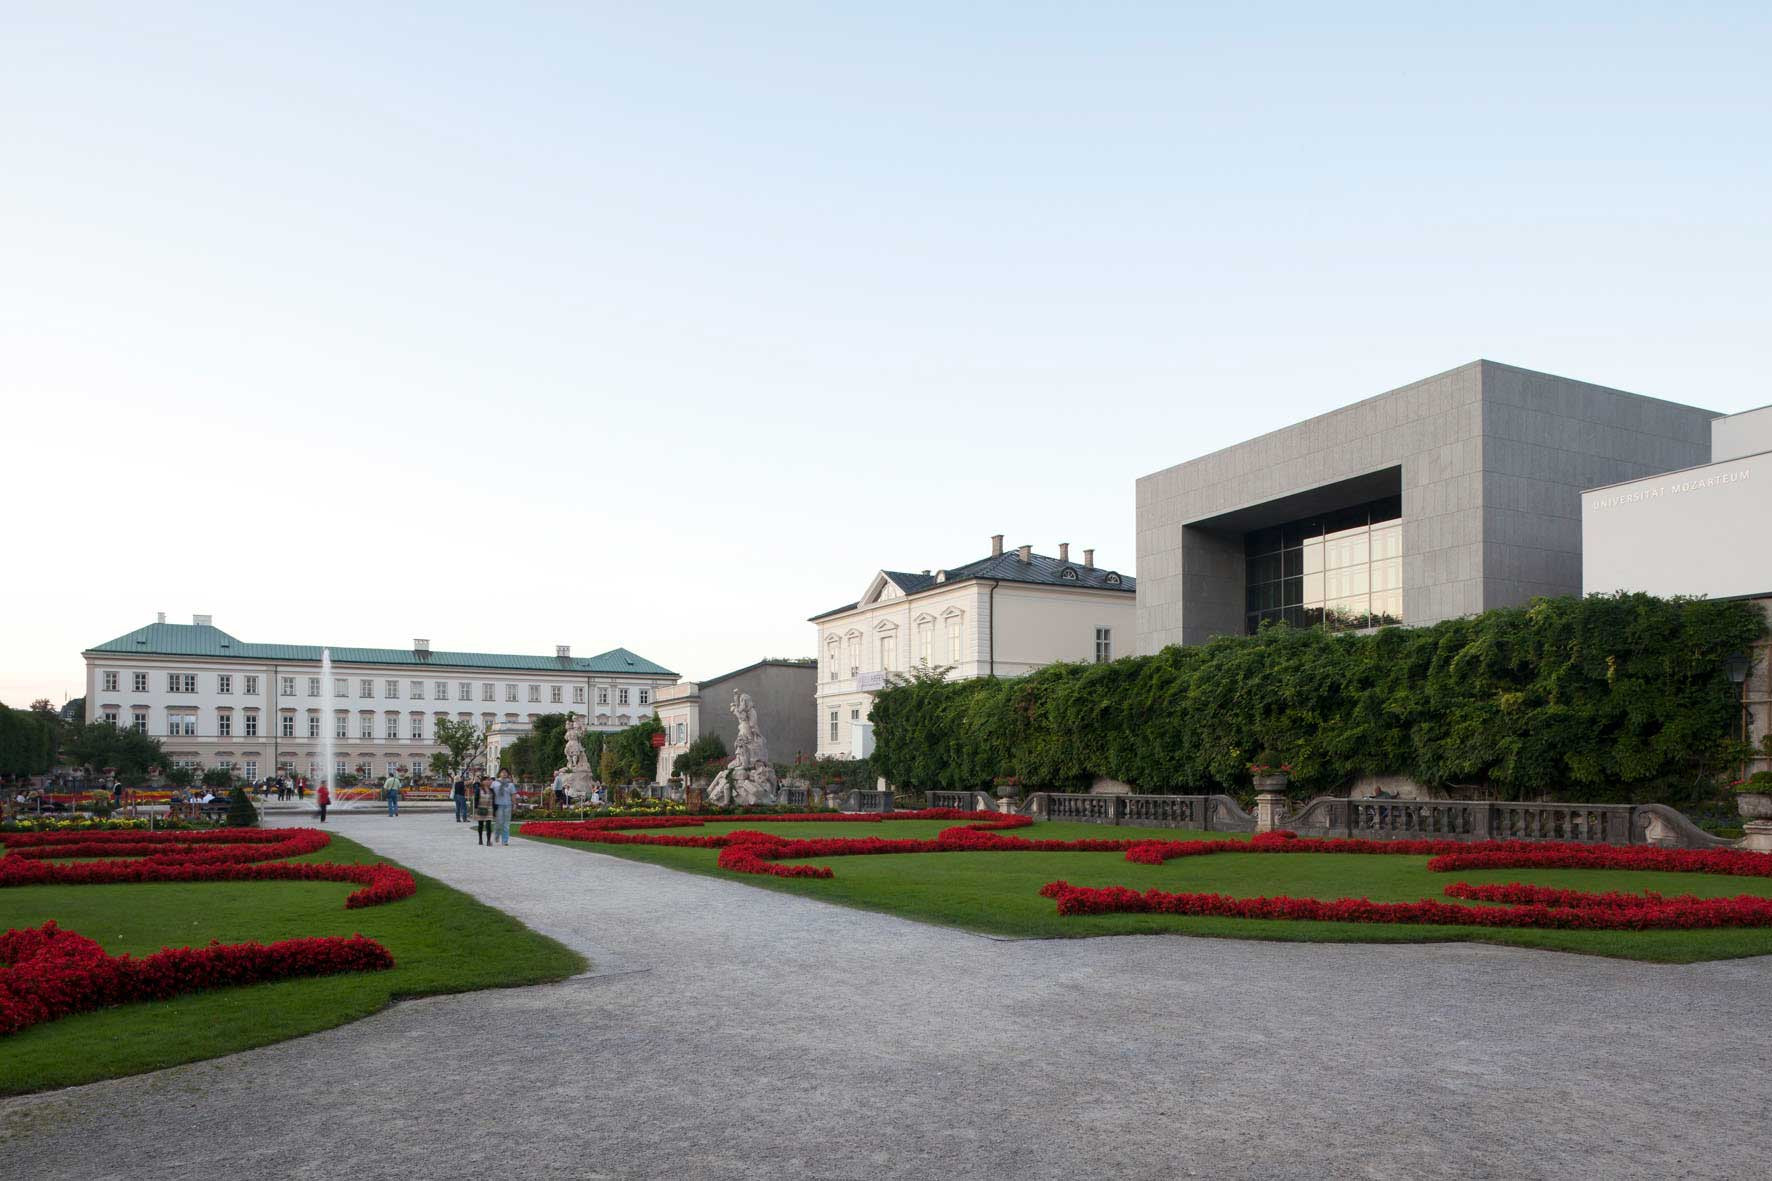 Mirabellgarten mit Schloss, Villa Kast und dem Solitär vom Mozarteum